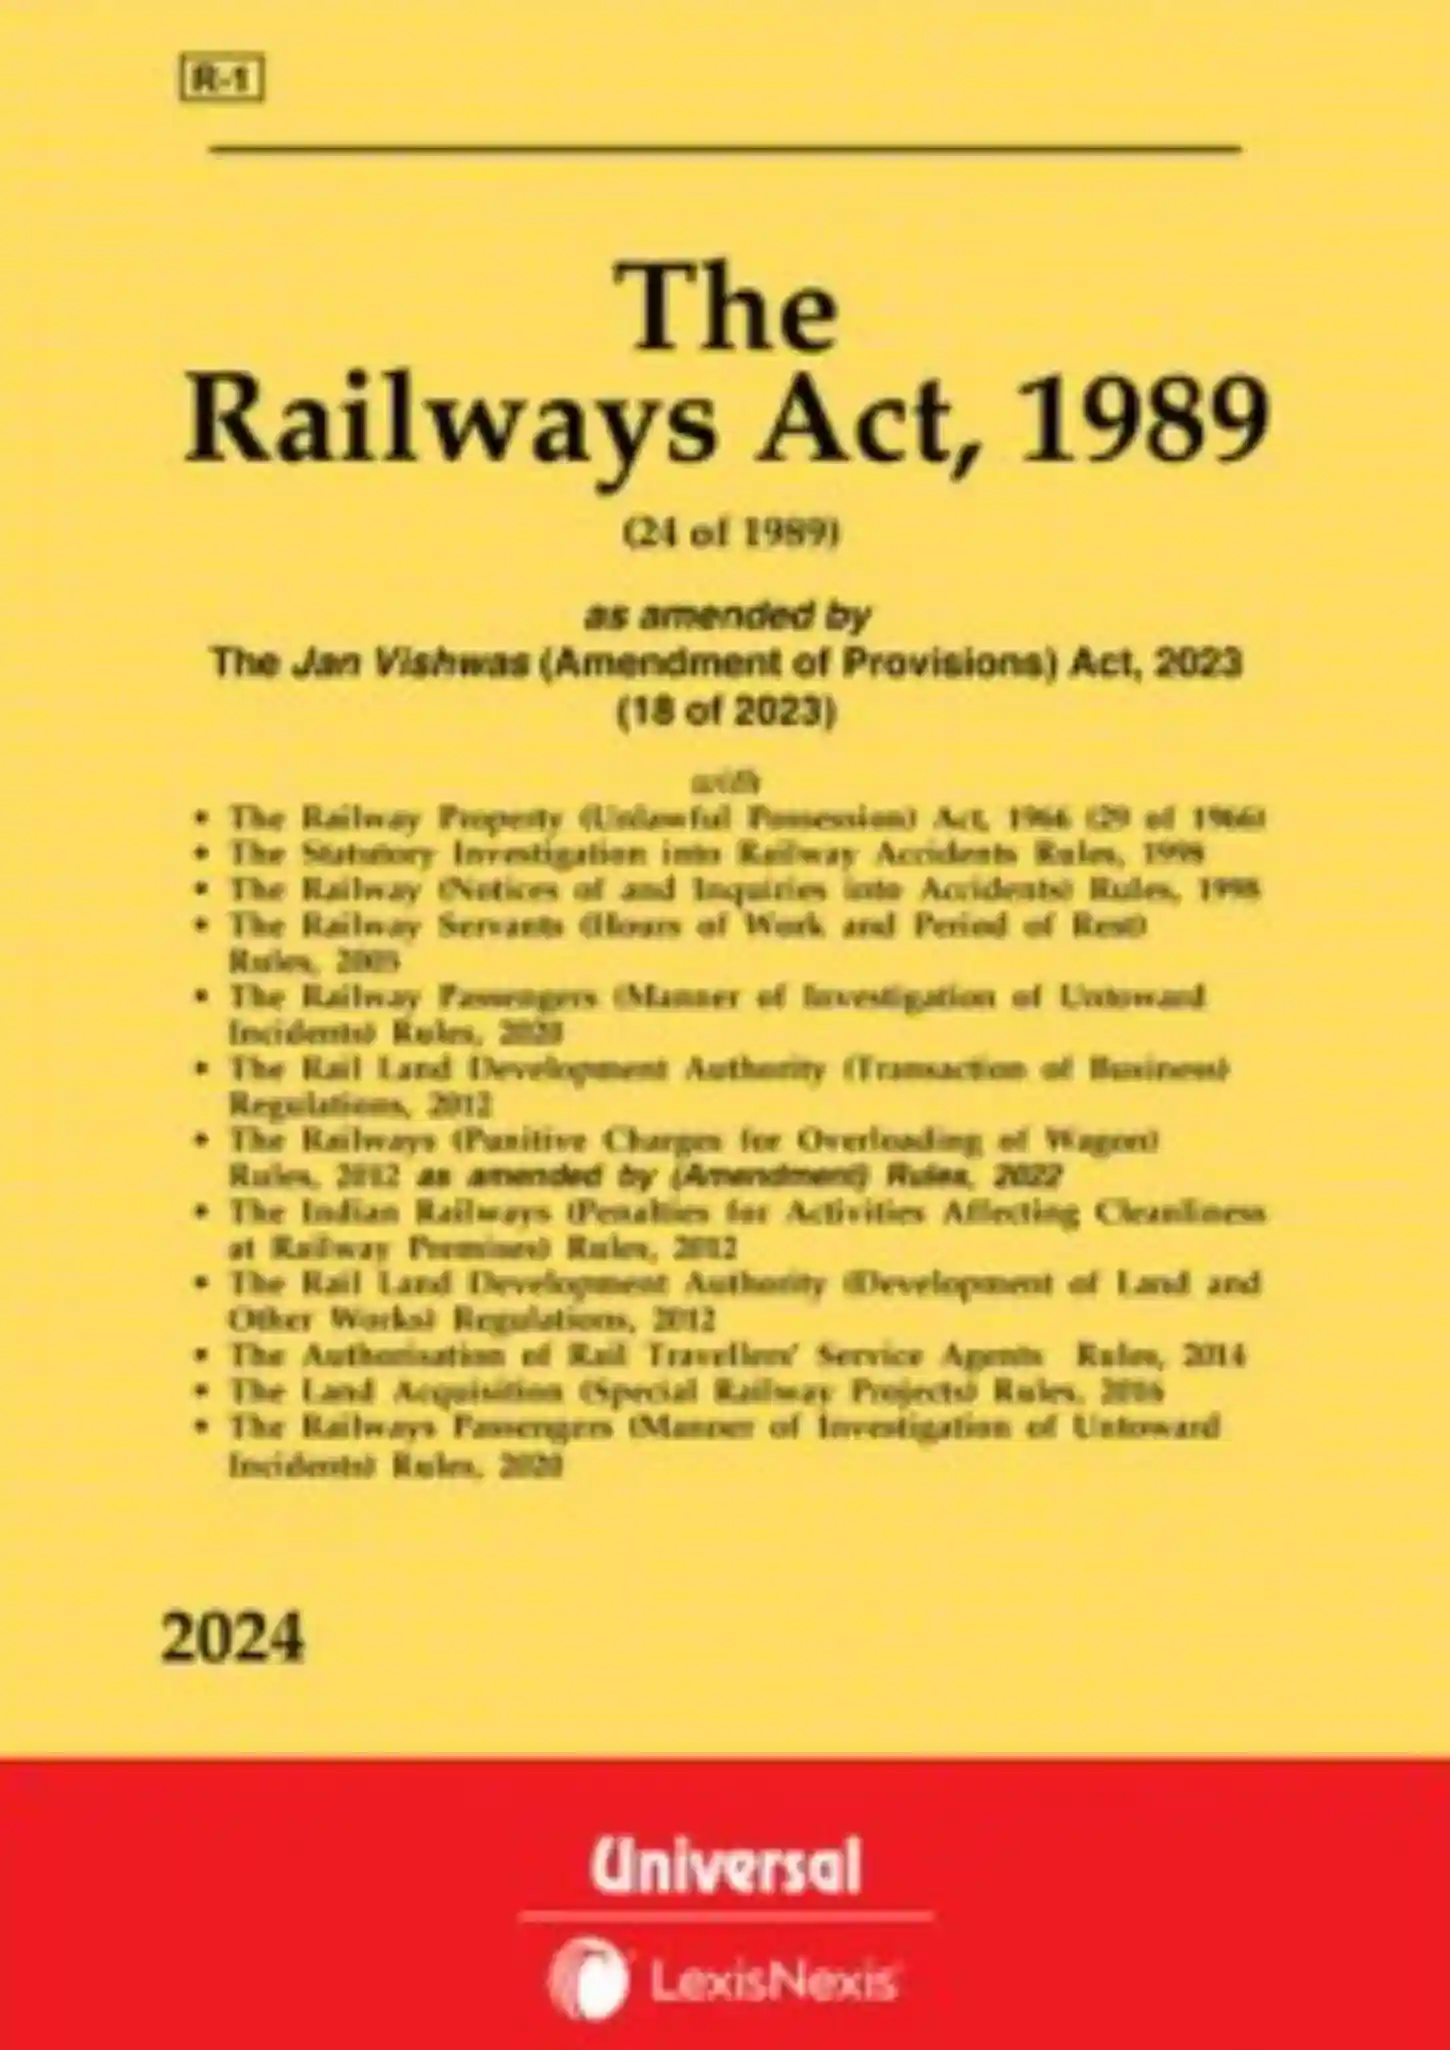 The Railways Act, 1989